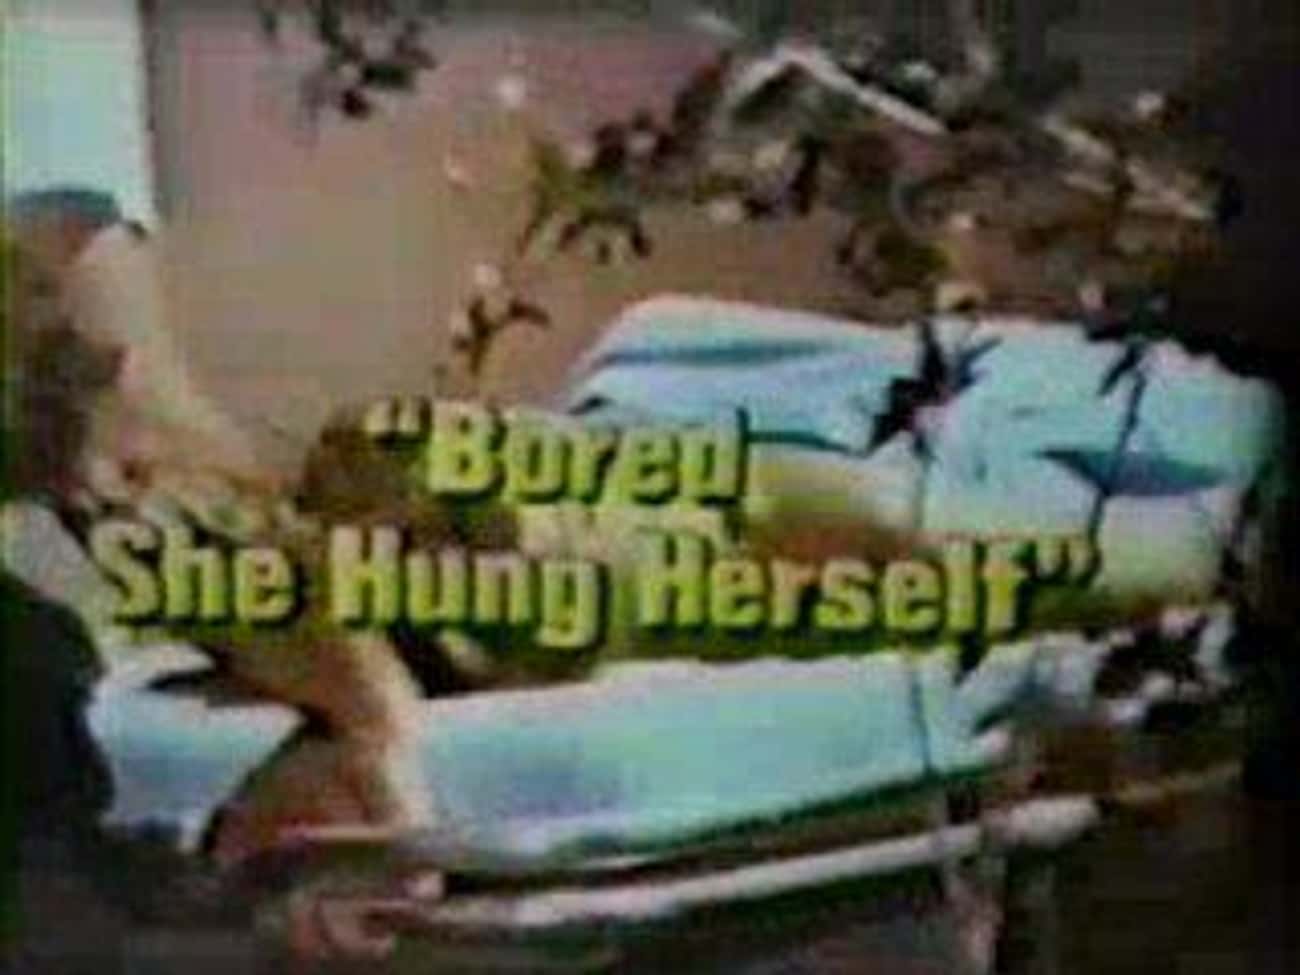 1970: Hawaii Five-O, 'Bored, She Hung Herself' 